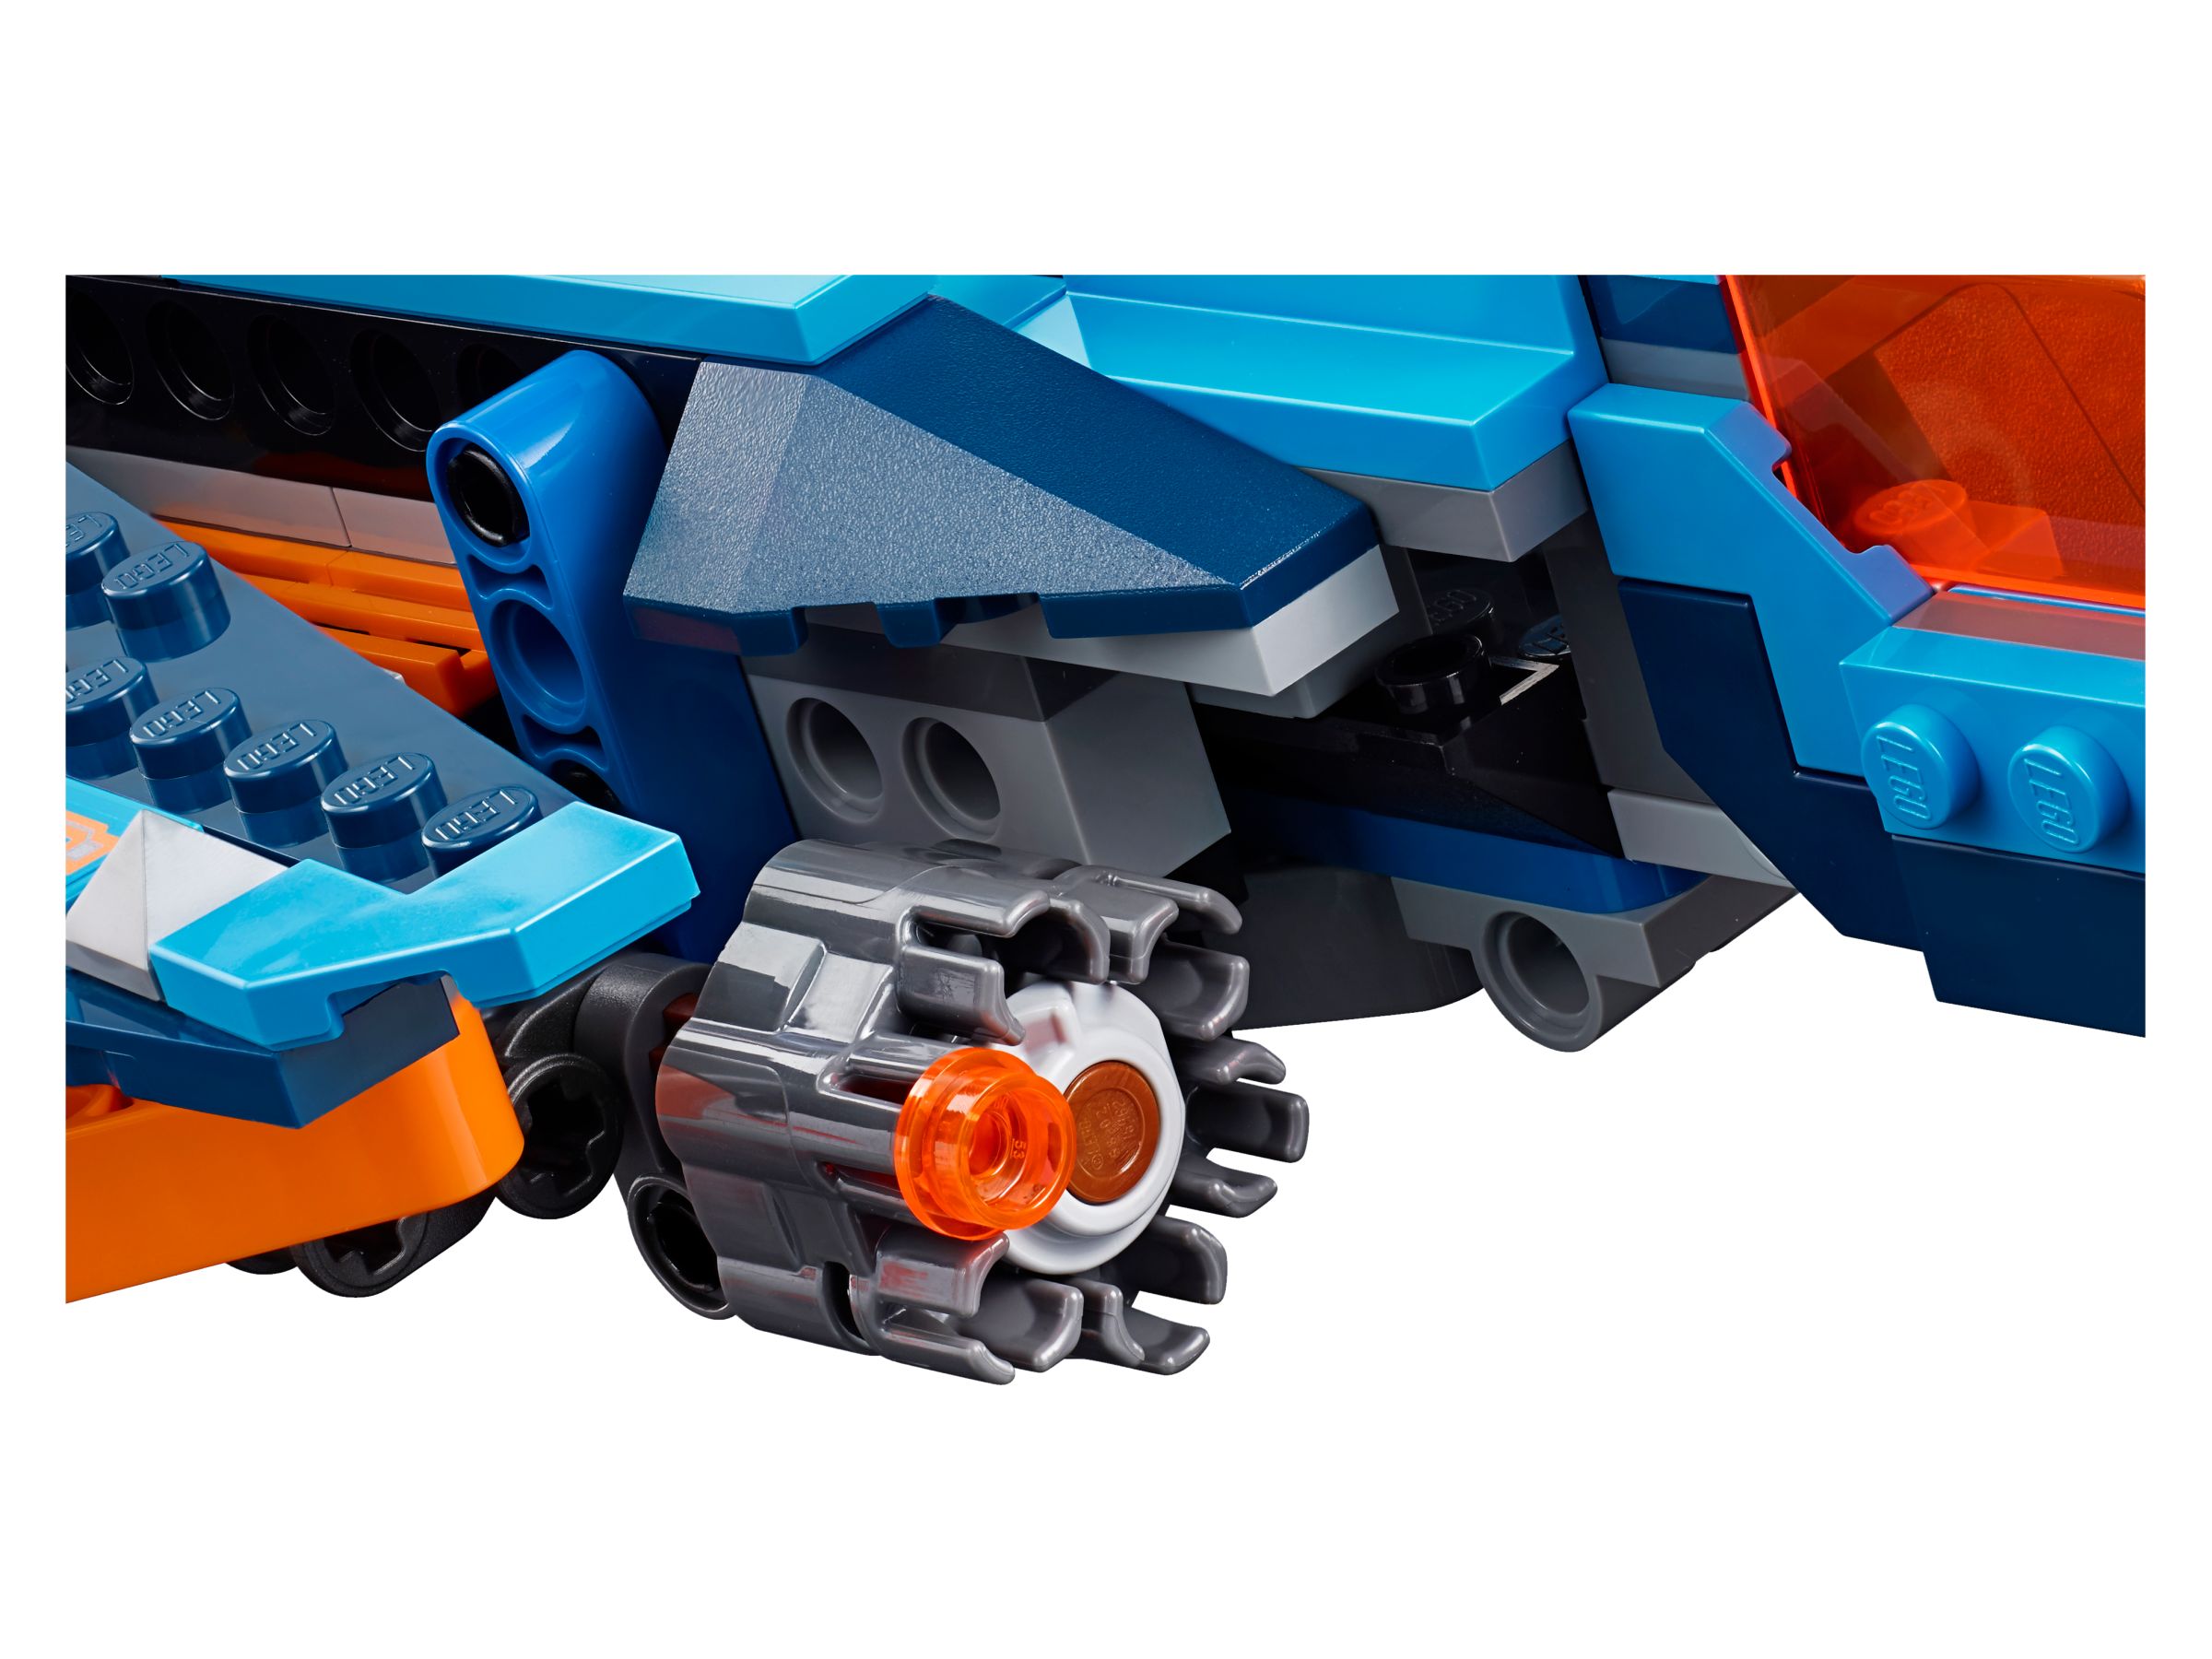 LEGO Nexo Knights 70351 Clays Blaster-Falke LEGO_70351_alt5.jpg